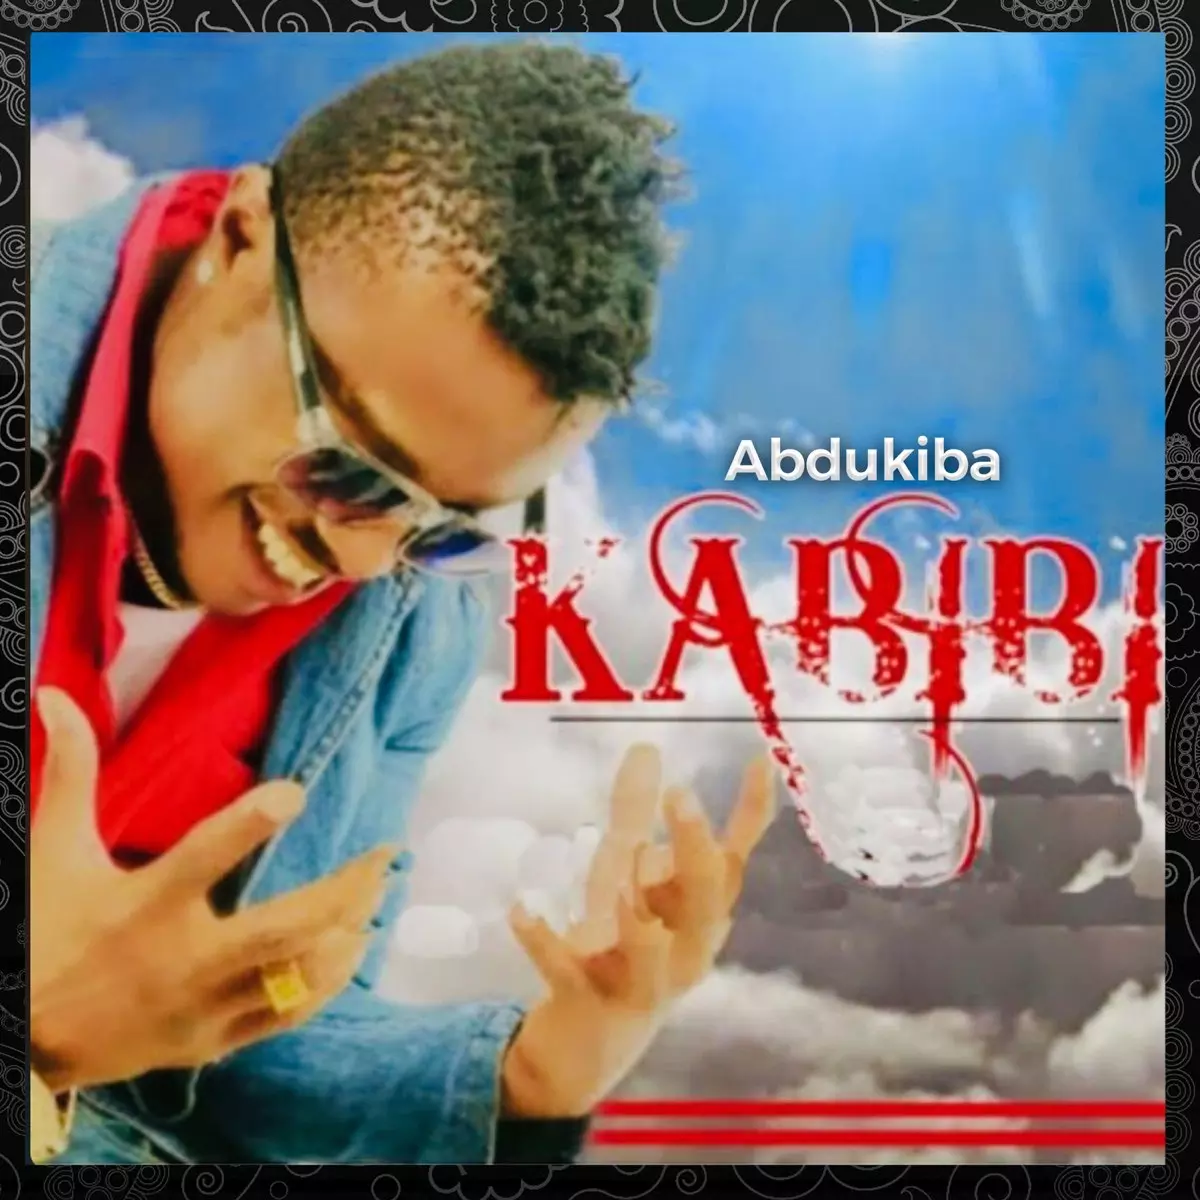 Kabibi - Single by AbduKiba on Apple Music